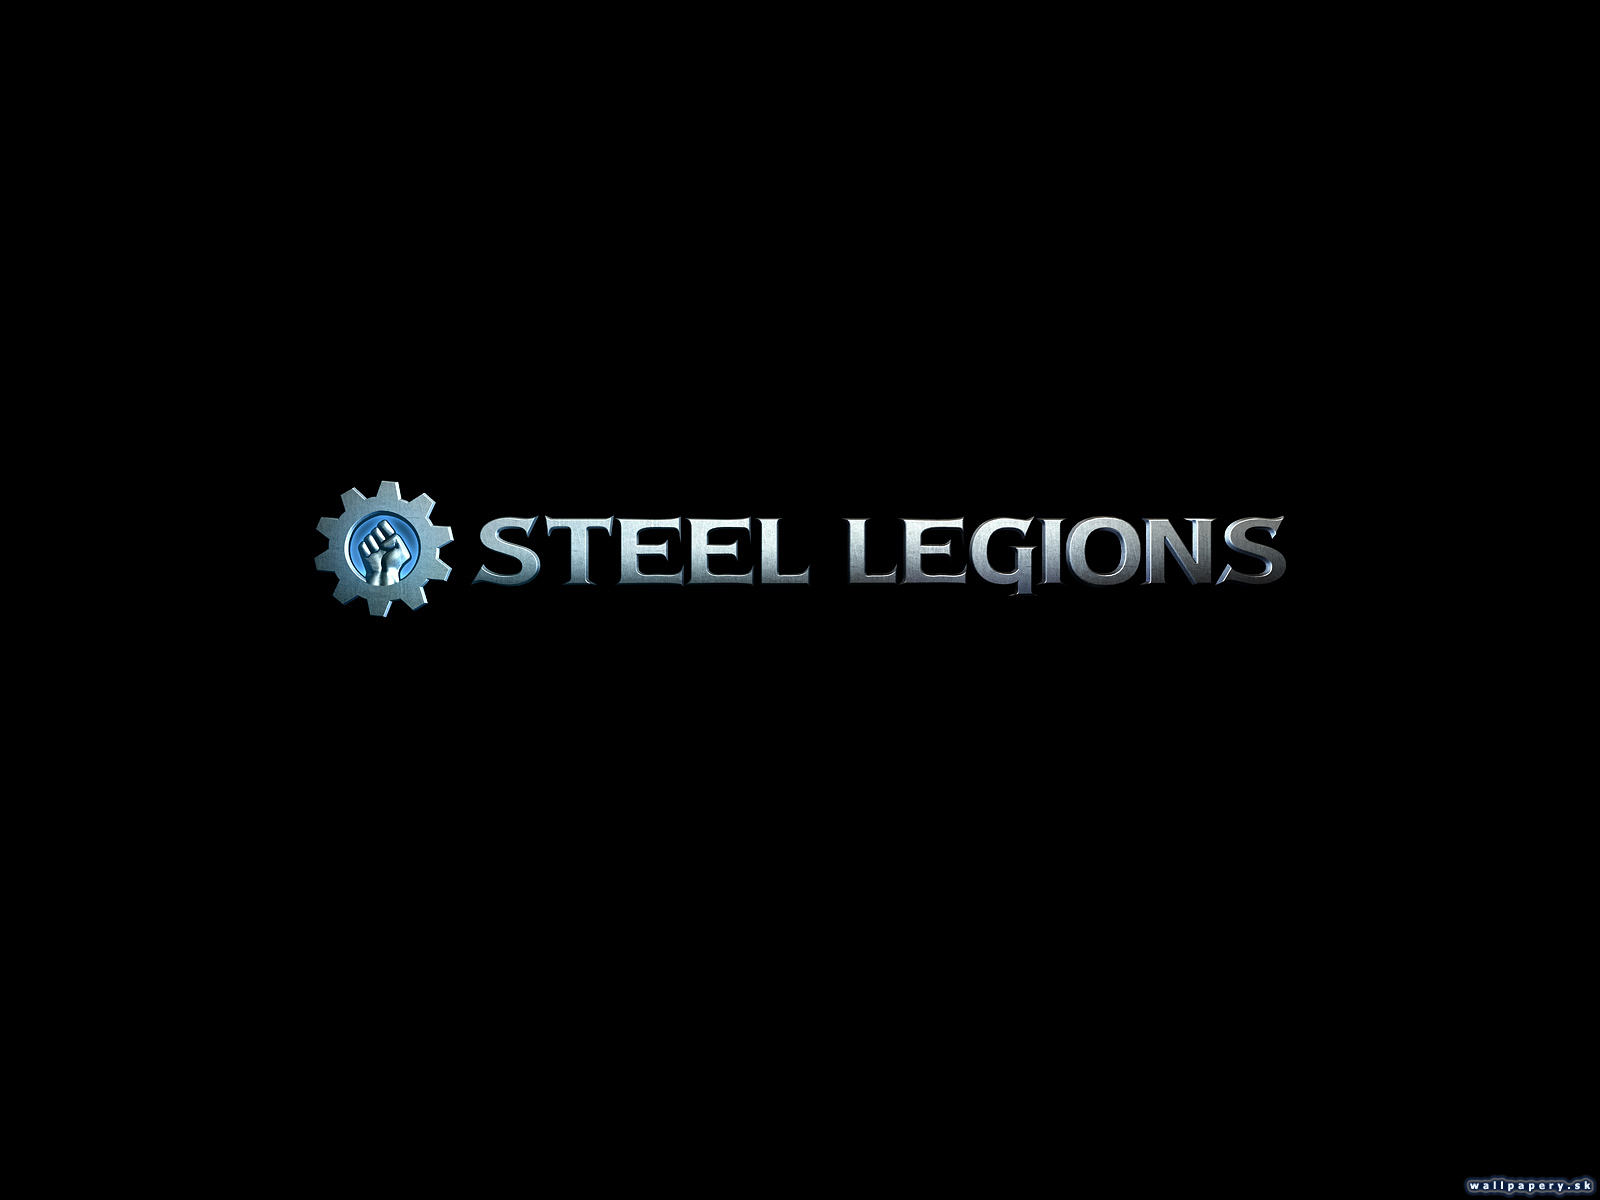 Steel Legions - wallpaper 4